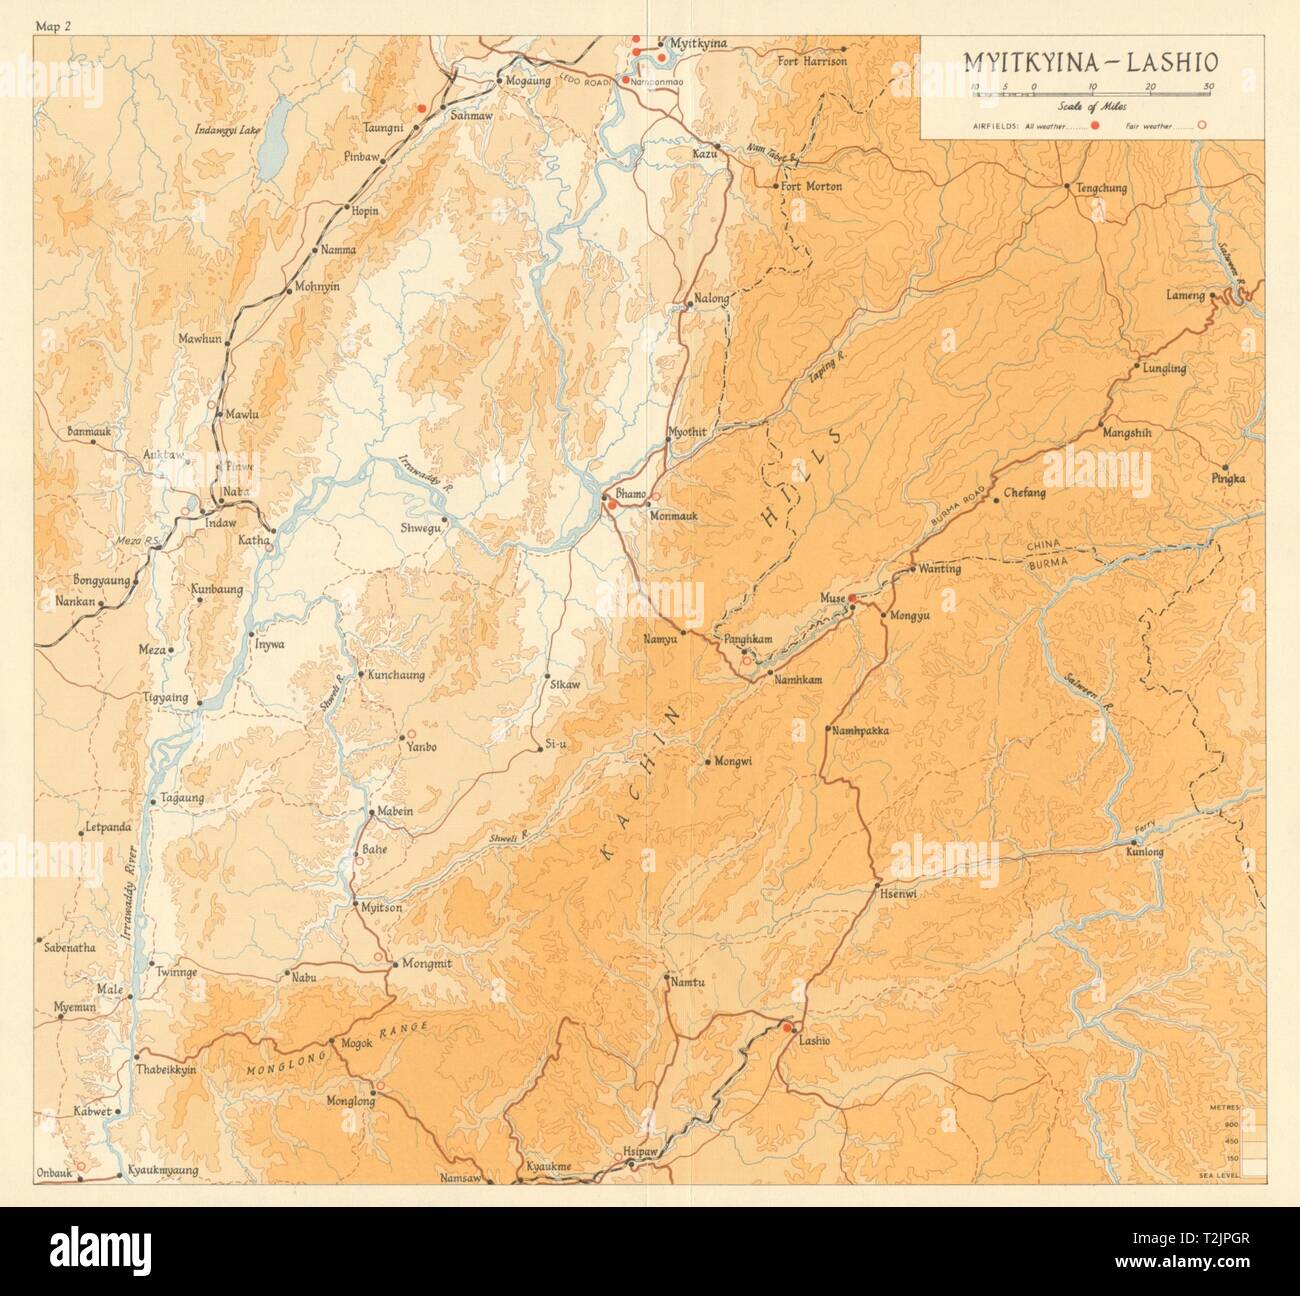 Campagna di birmania 1944. Myitkyina - Laschio. Campi di aviazione. Guerra Mondiale 2 1965 mappa vecchia Foto Stock